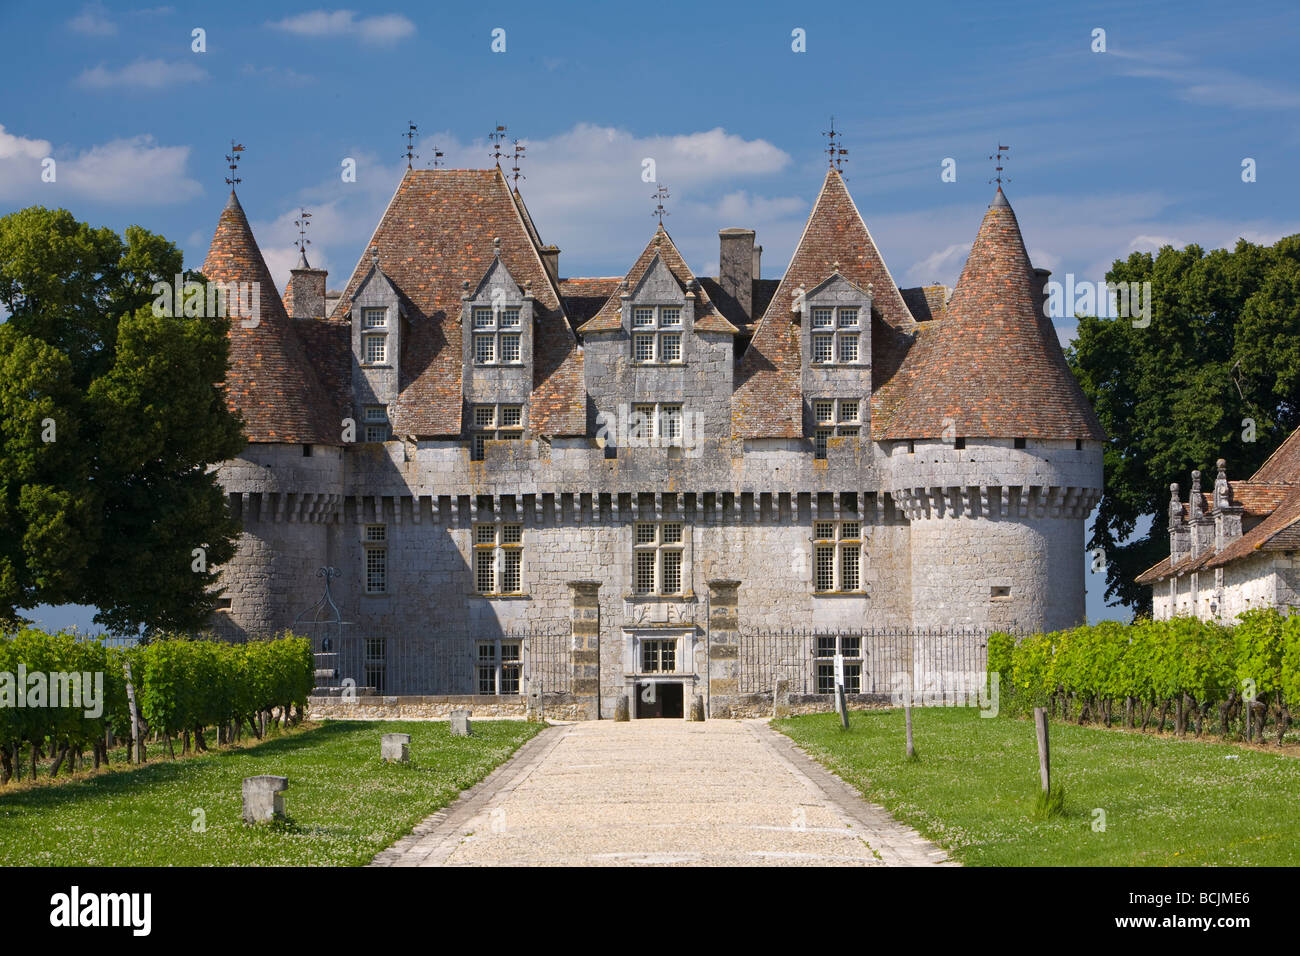 Chateau de Monbazillac, Dordogne, France Stock Photo